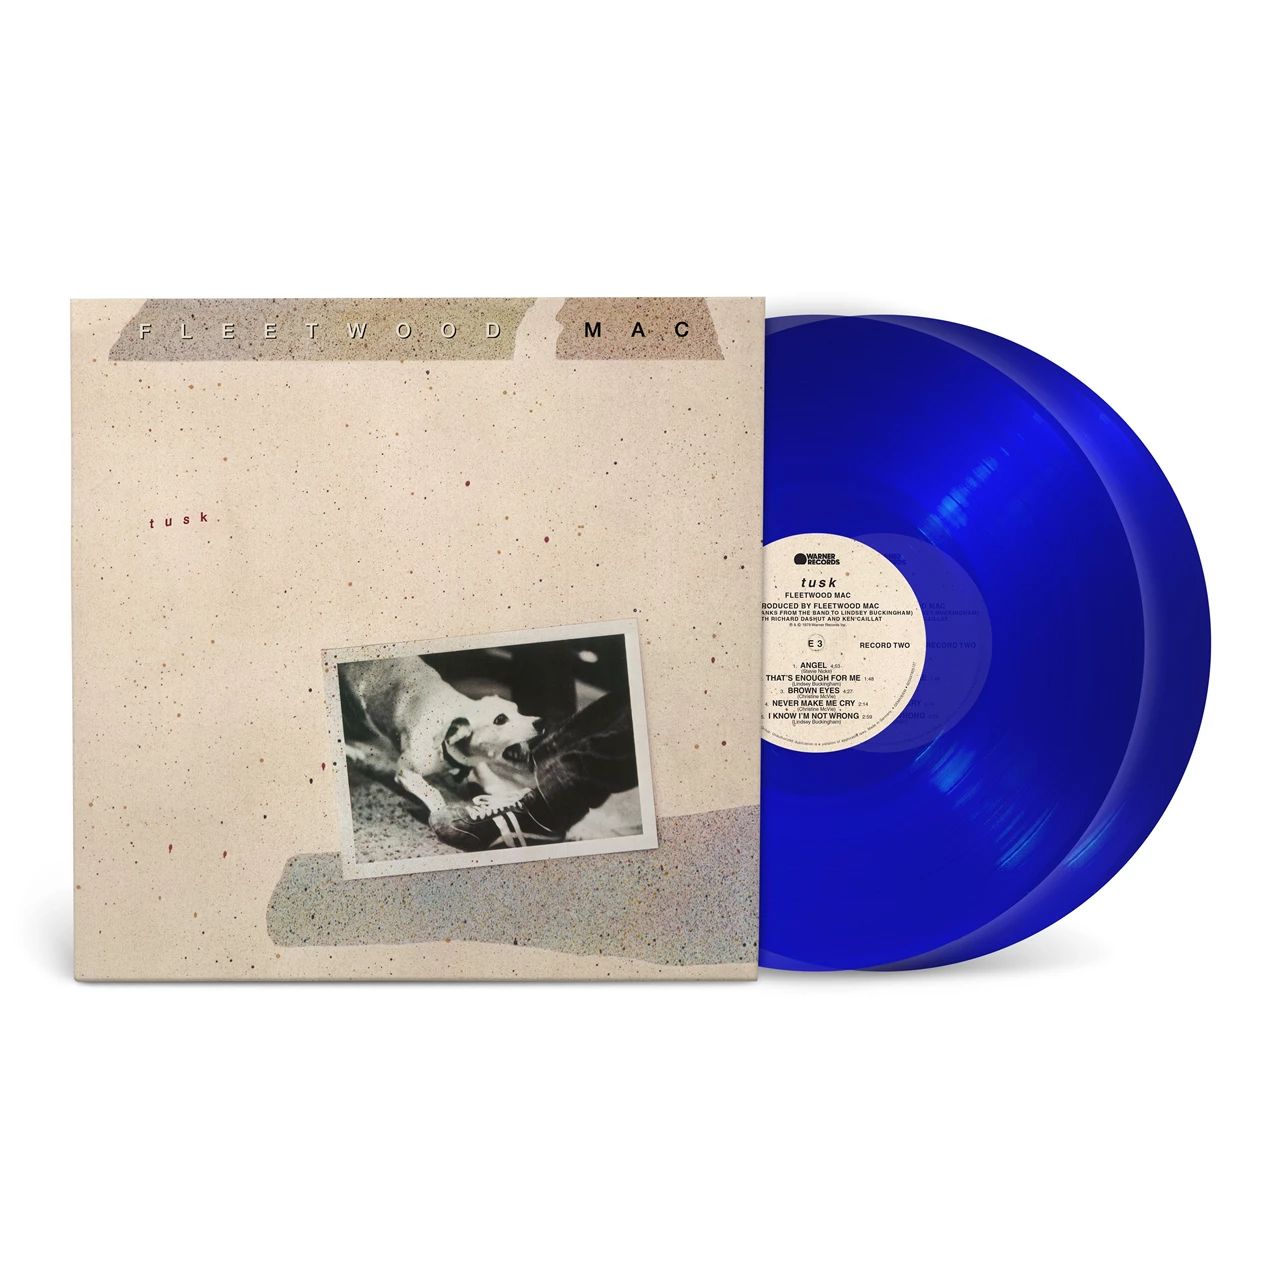 FLEETWOOD MAC – TUSK transparent blue vinyl LP2